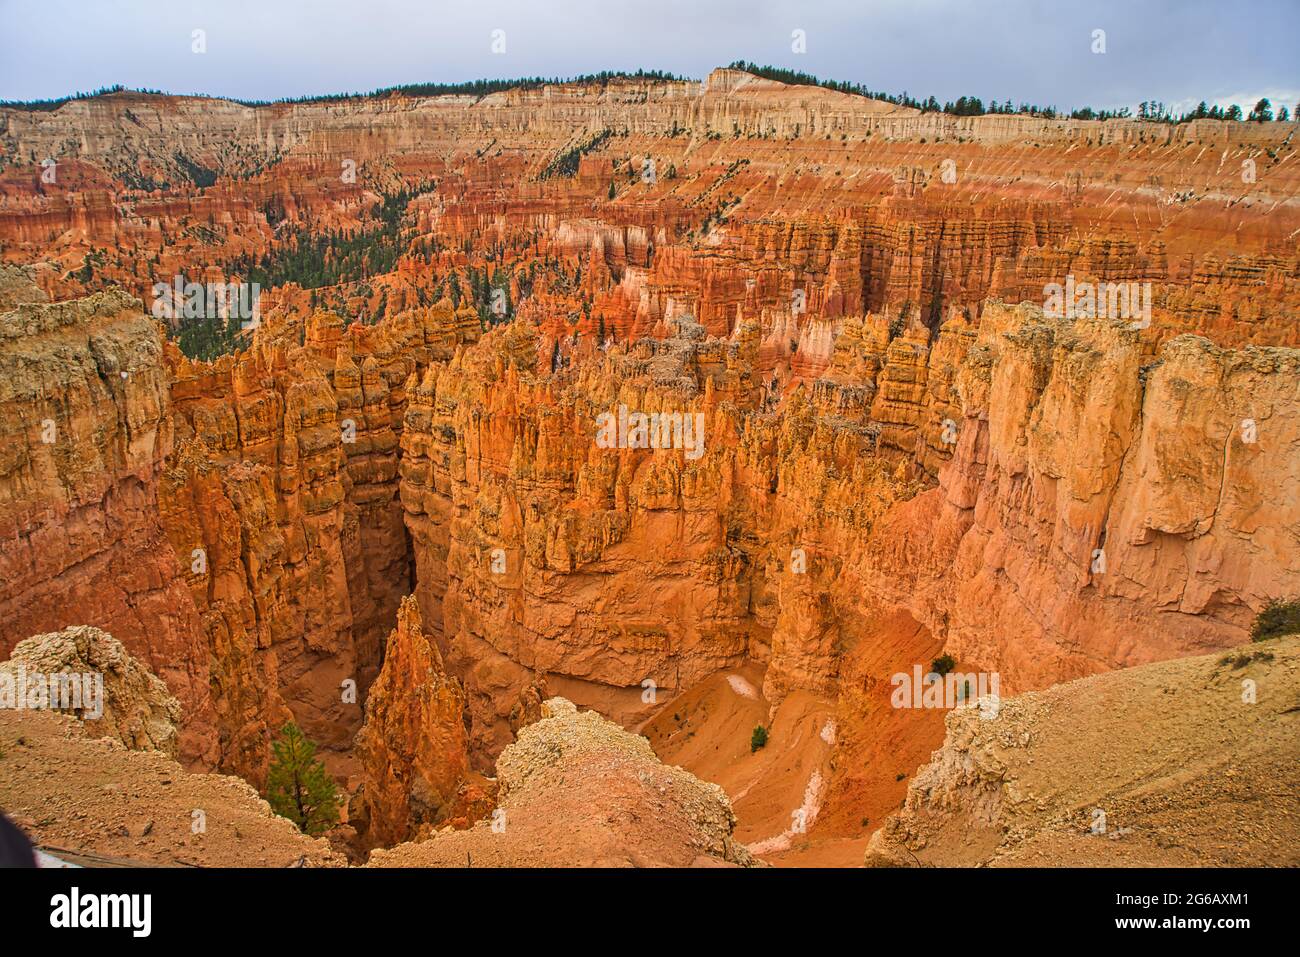 Der Zion National Park umfasst Berge, Flüsse, Schluchten und natürliche Bögen. Die Wände der Schlucht sind rötlich-bräunlicher Navajo-Sandstein. Utah, USA. Stockfoto